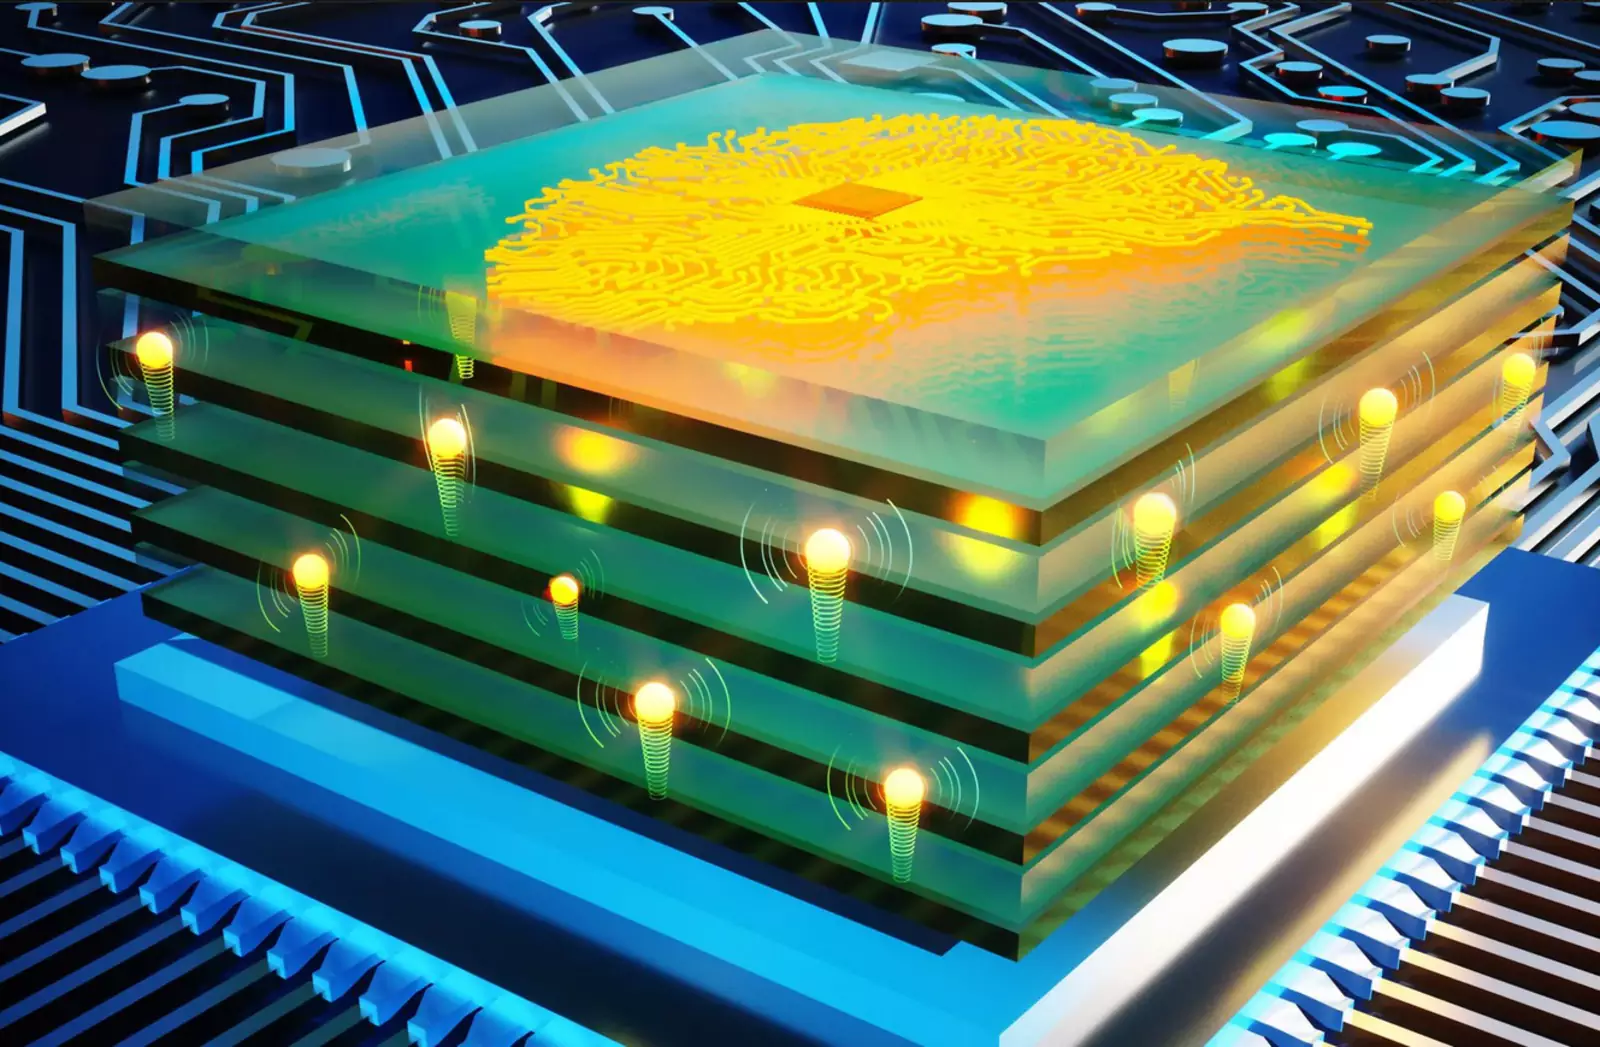 аналоговом процессоре глубокого обучения, состоящем из набора новых протонных резисторов.